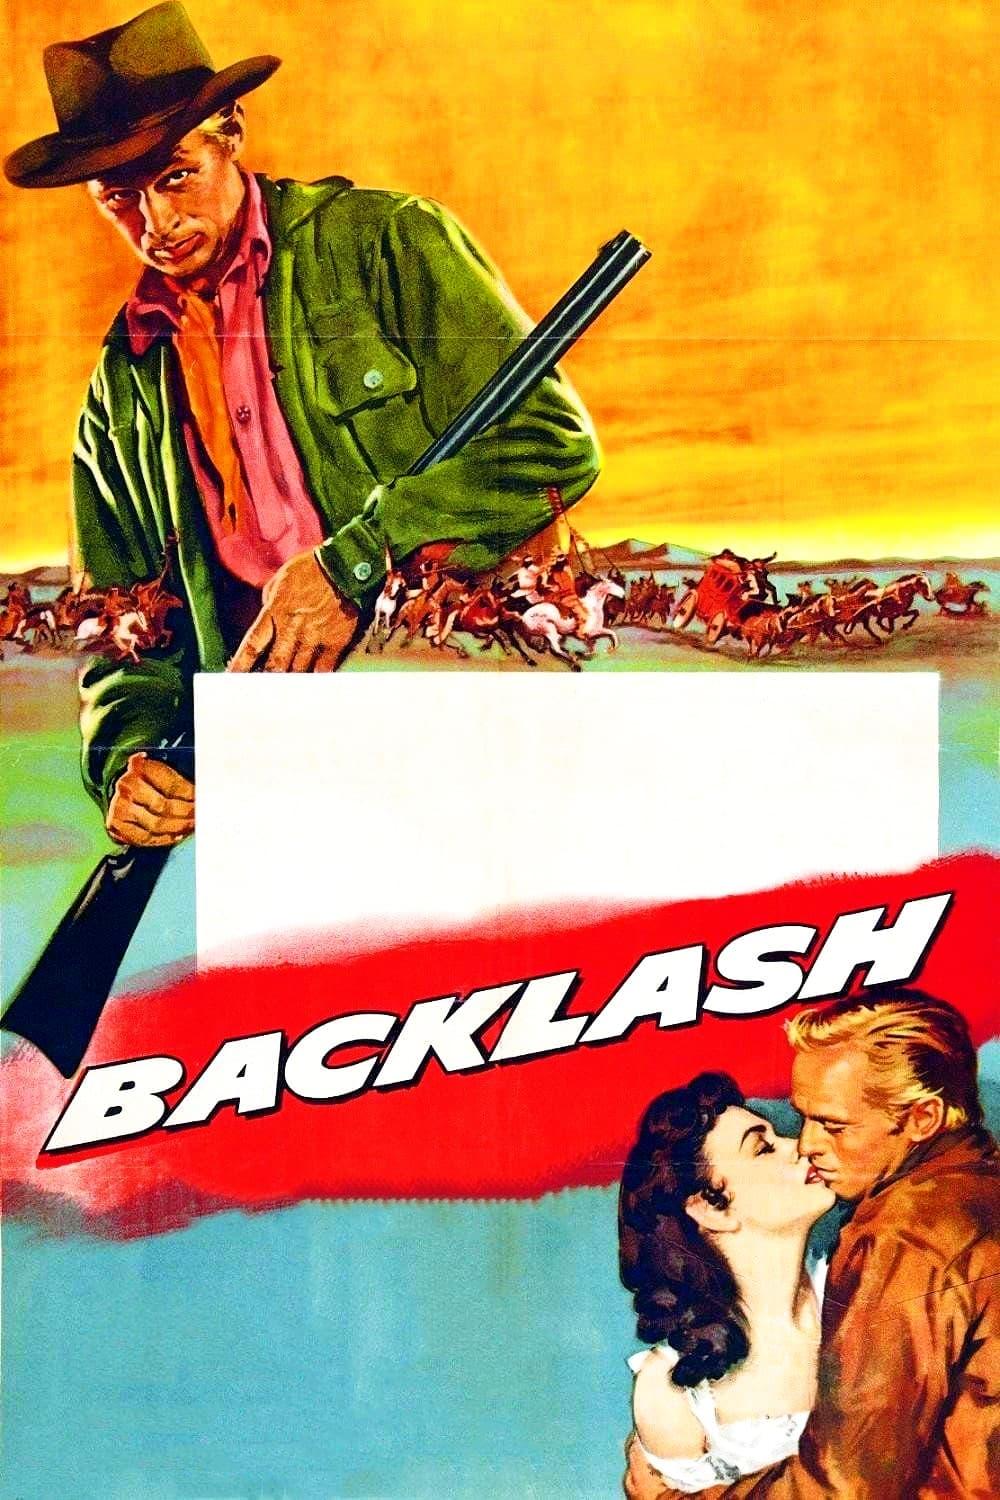 Backlash poster